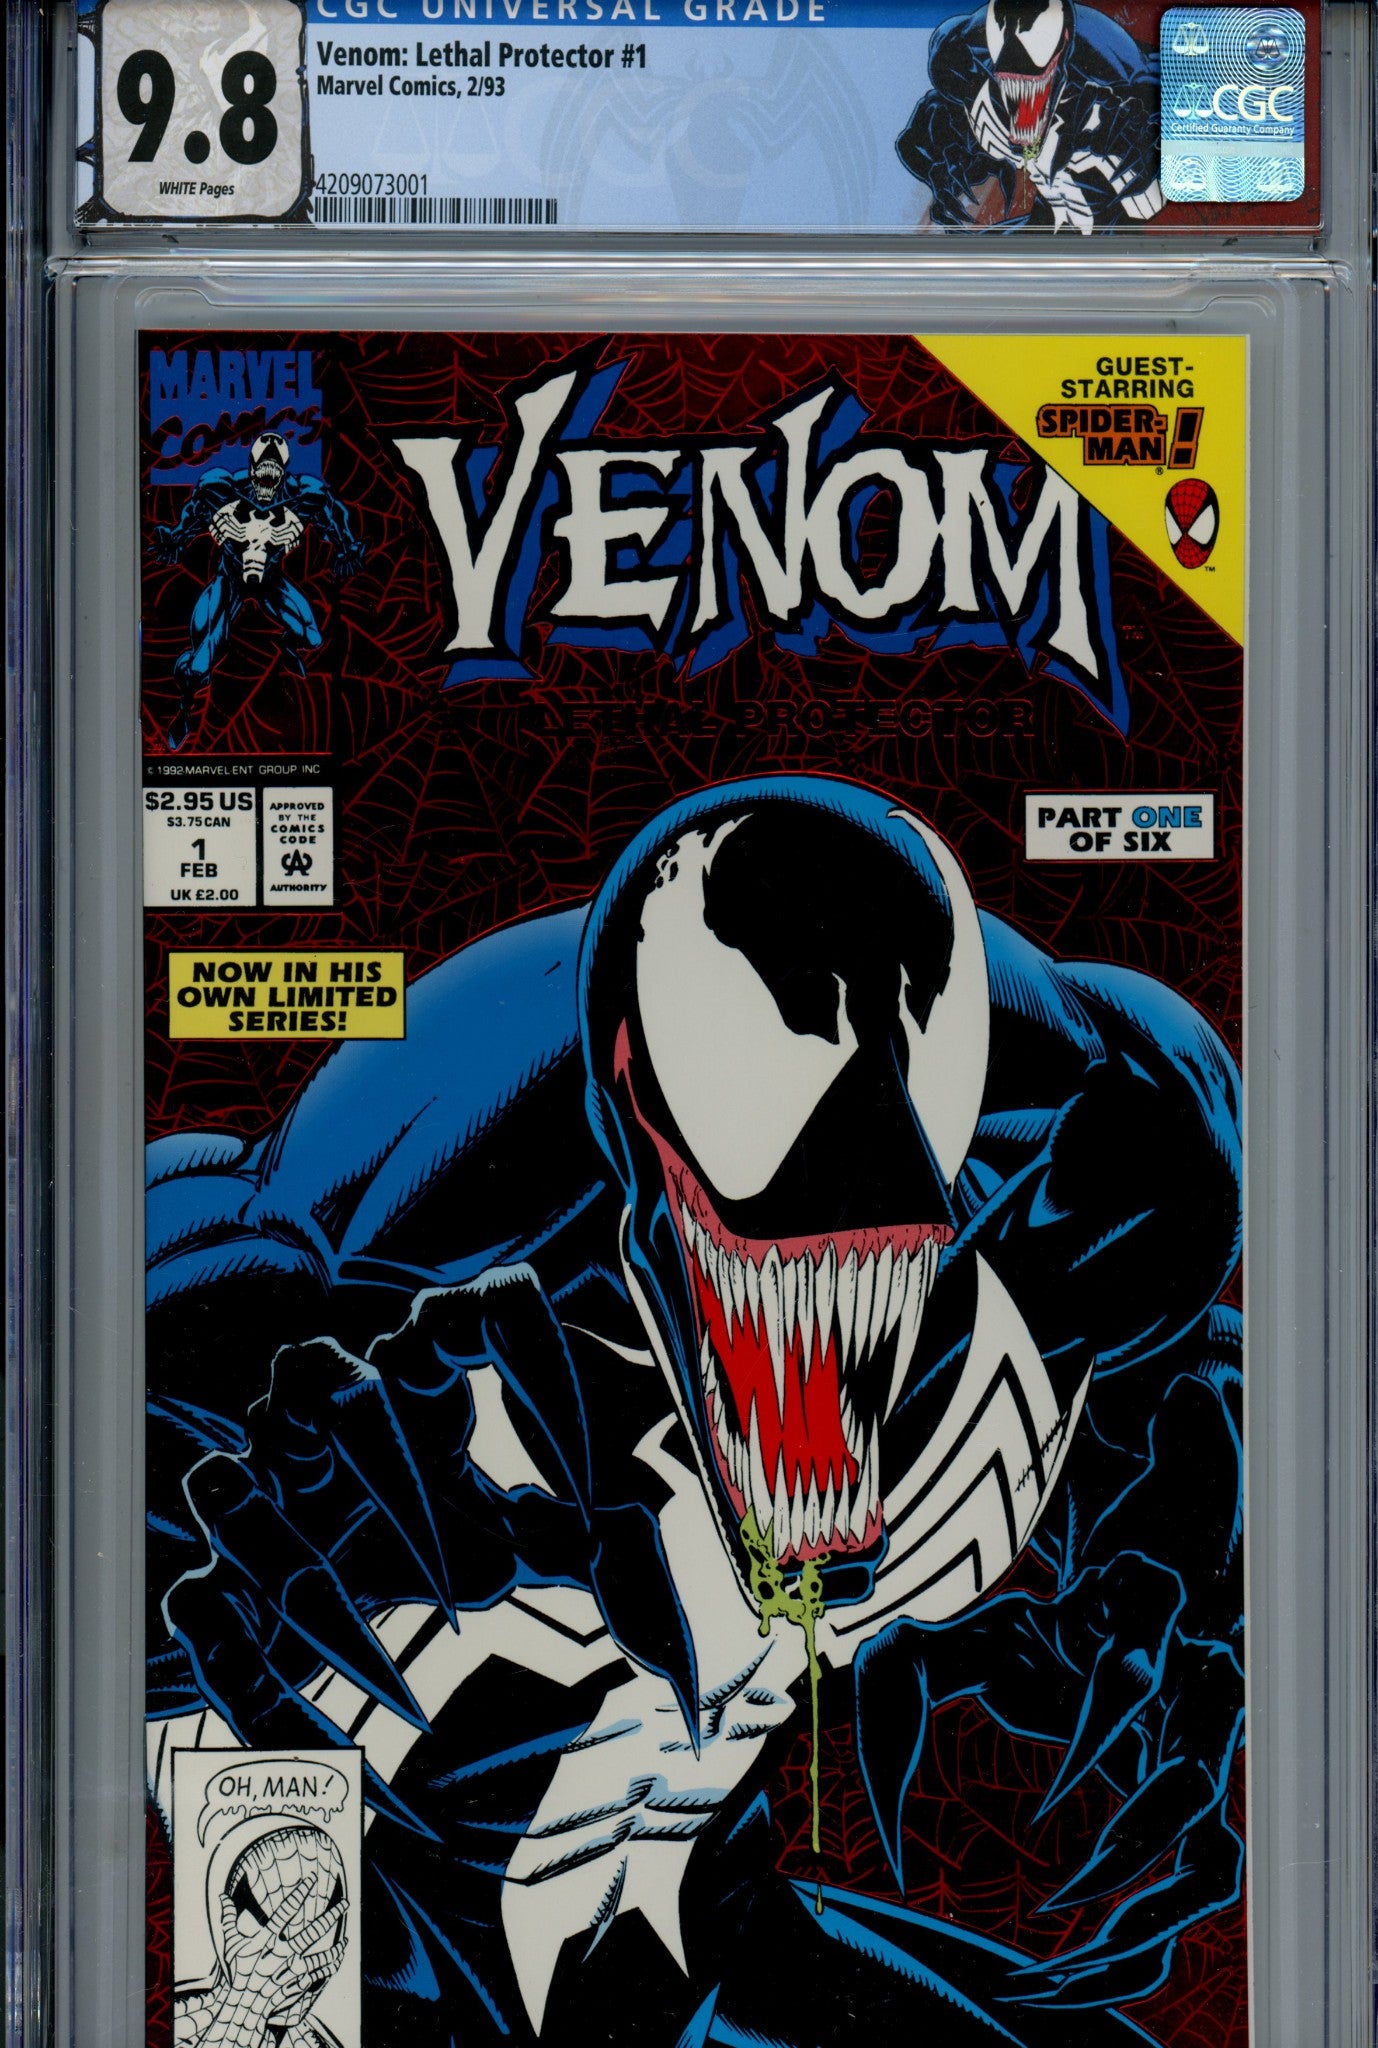 Venom: Lethal Protector Vol 1 1 9.8 (1992)